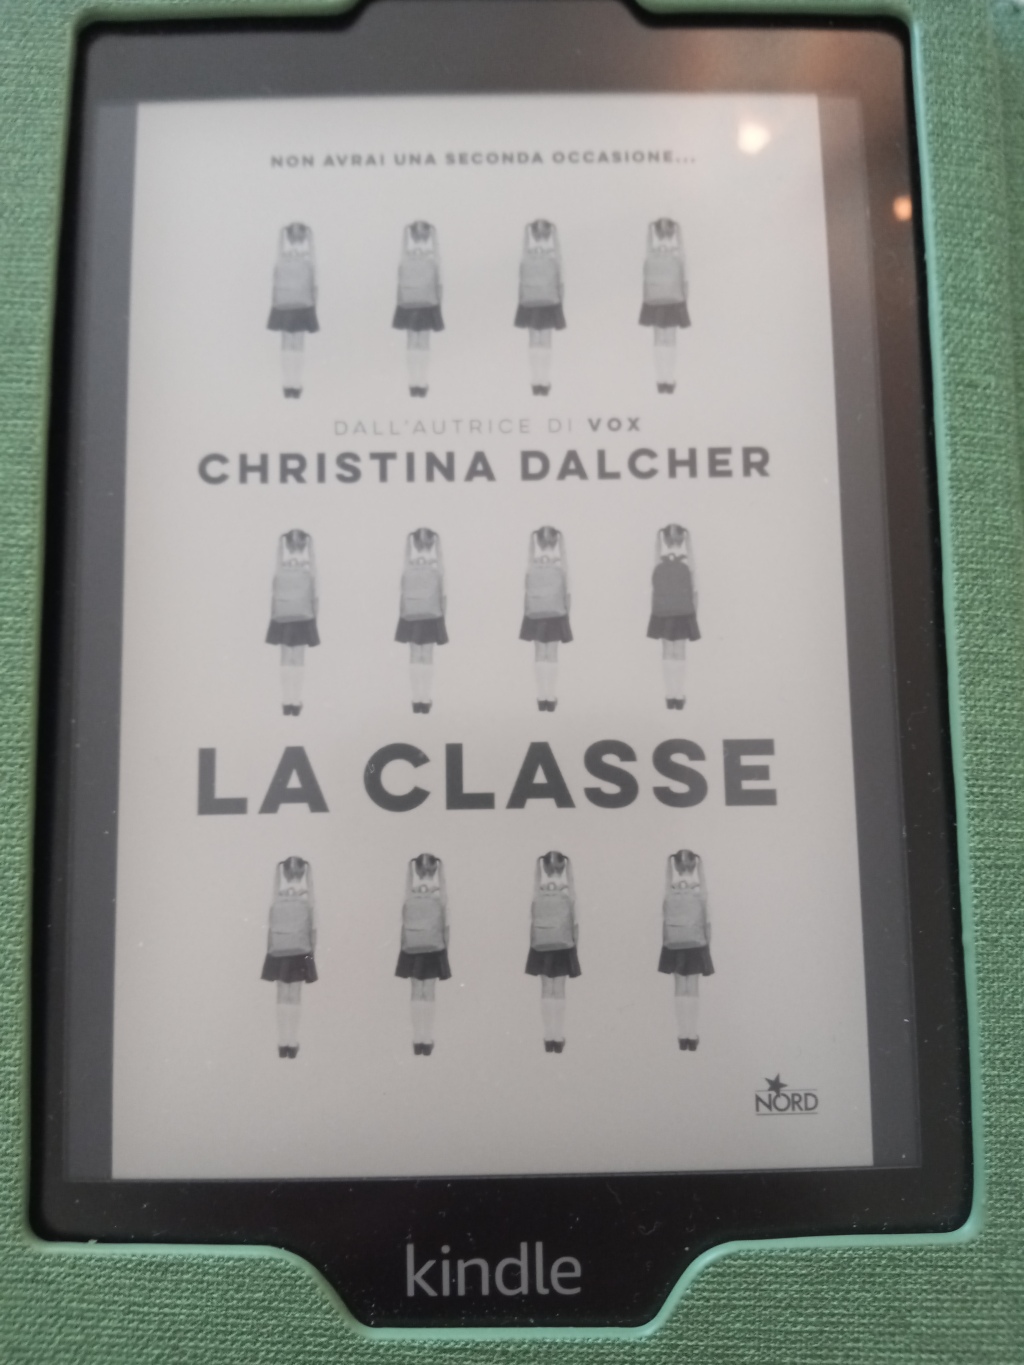 Orecchio 18. “La classe” – C. Dalcher